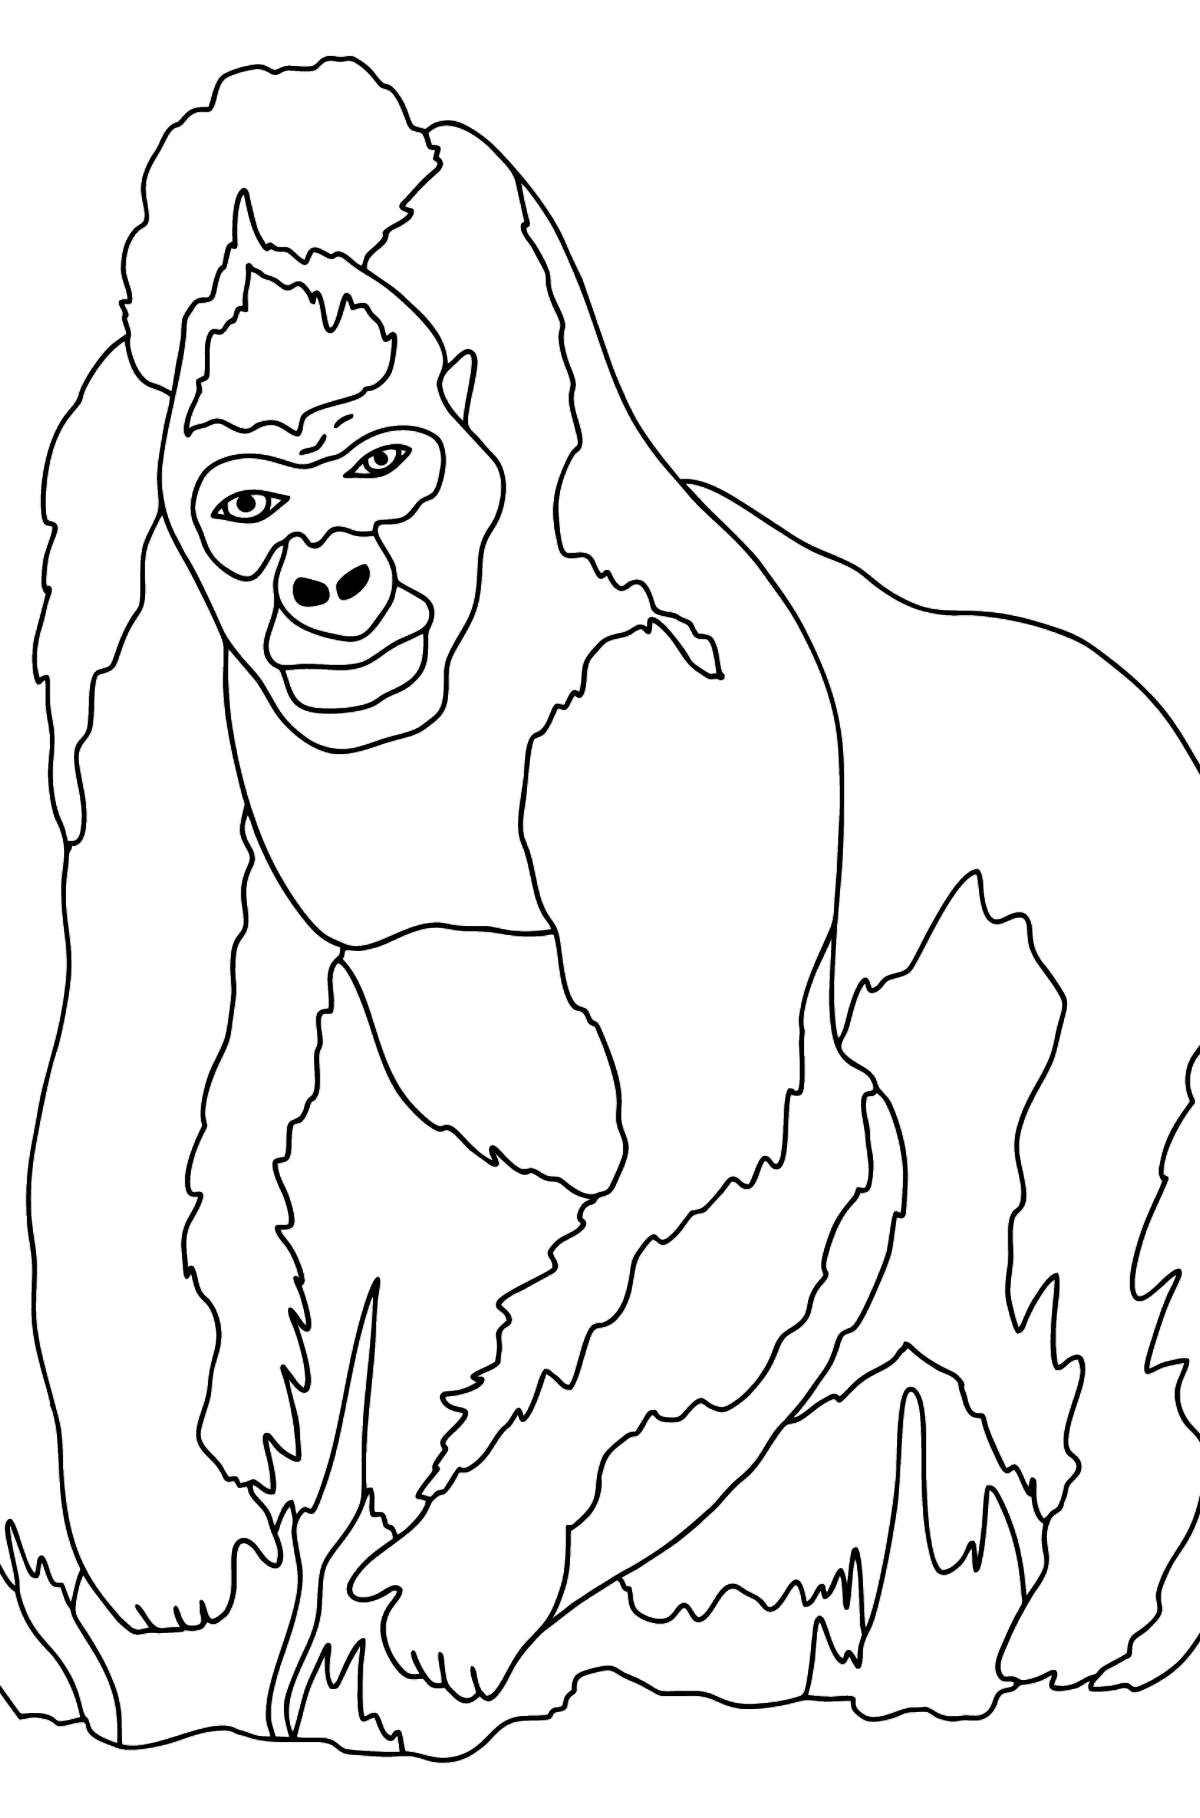 Kleurplaat gorilla (moeilijk) - kleurplaten voor kinderen